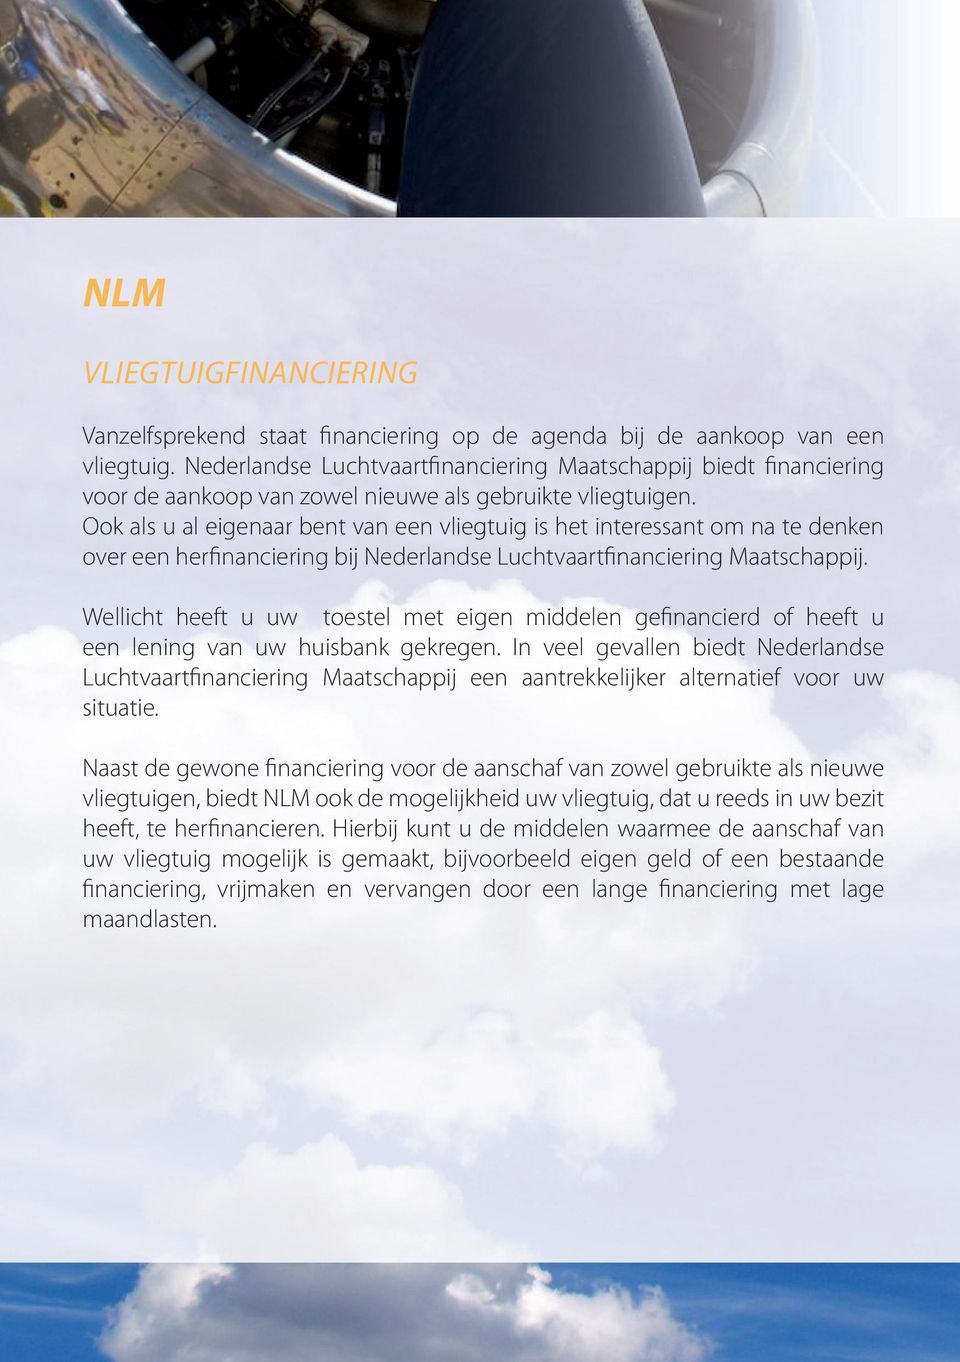 Ook als u al eigenaar bent van een vliegtuig is het interessant om na te denken over een herfinanciering bij Nederlandse Luchtvaartfinanciering Maatschappij.